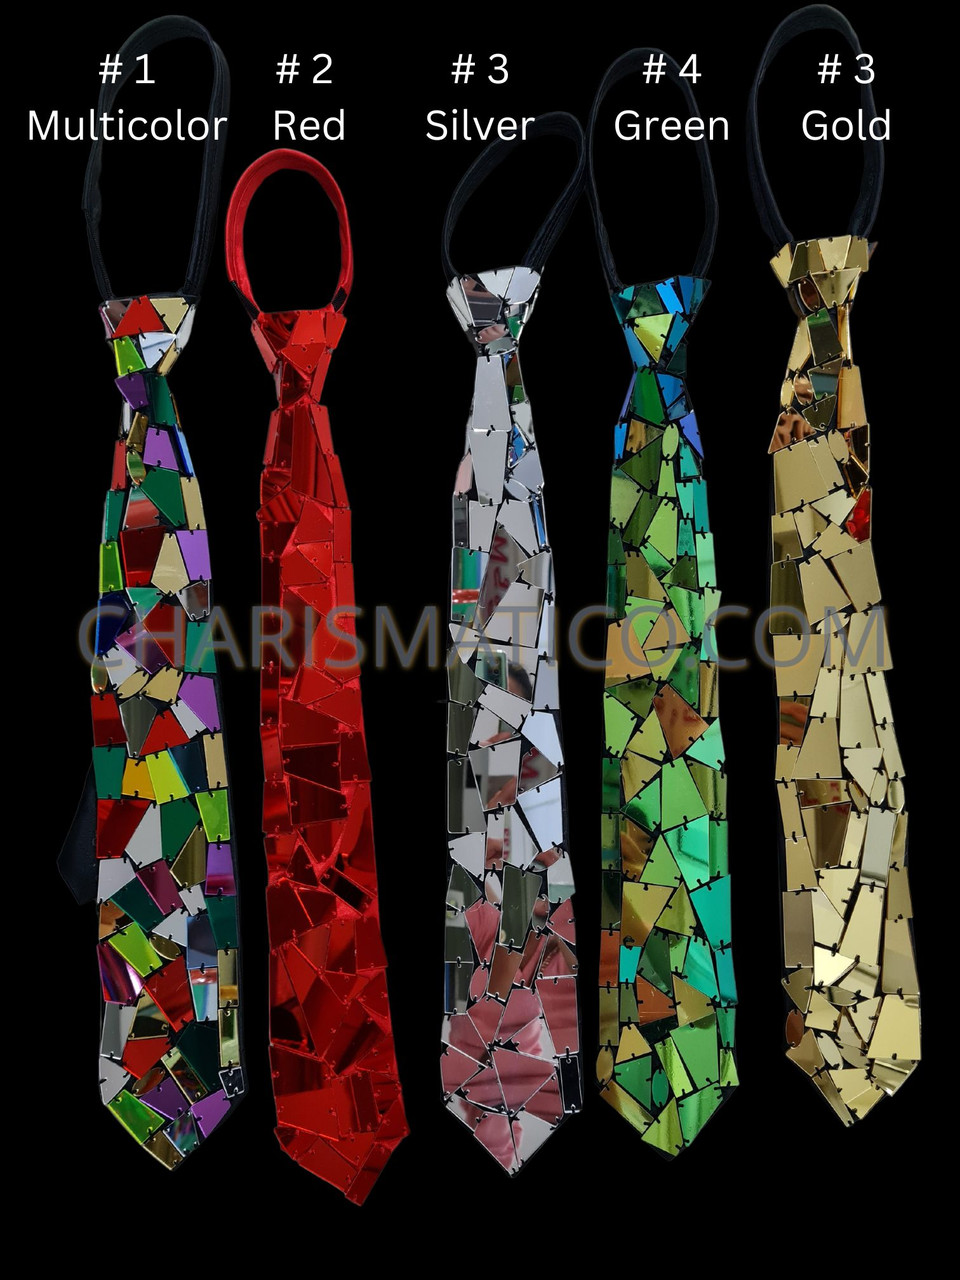 New Multicolor Crystal Tie Tack Fashion Gold Metal Tie Pin Necktie